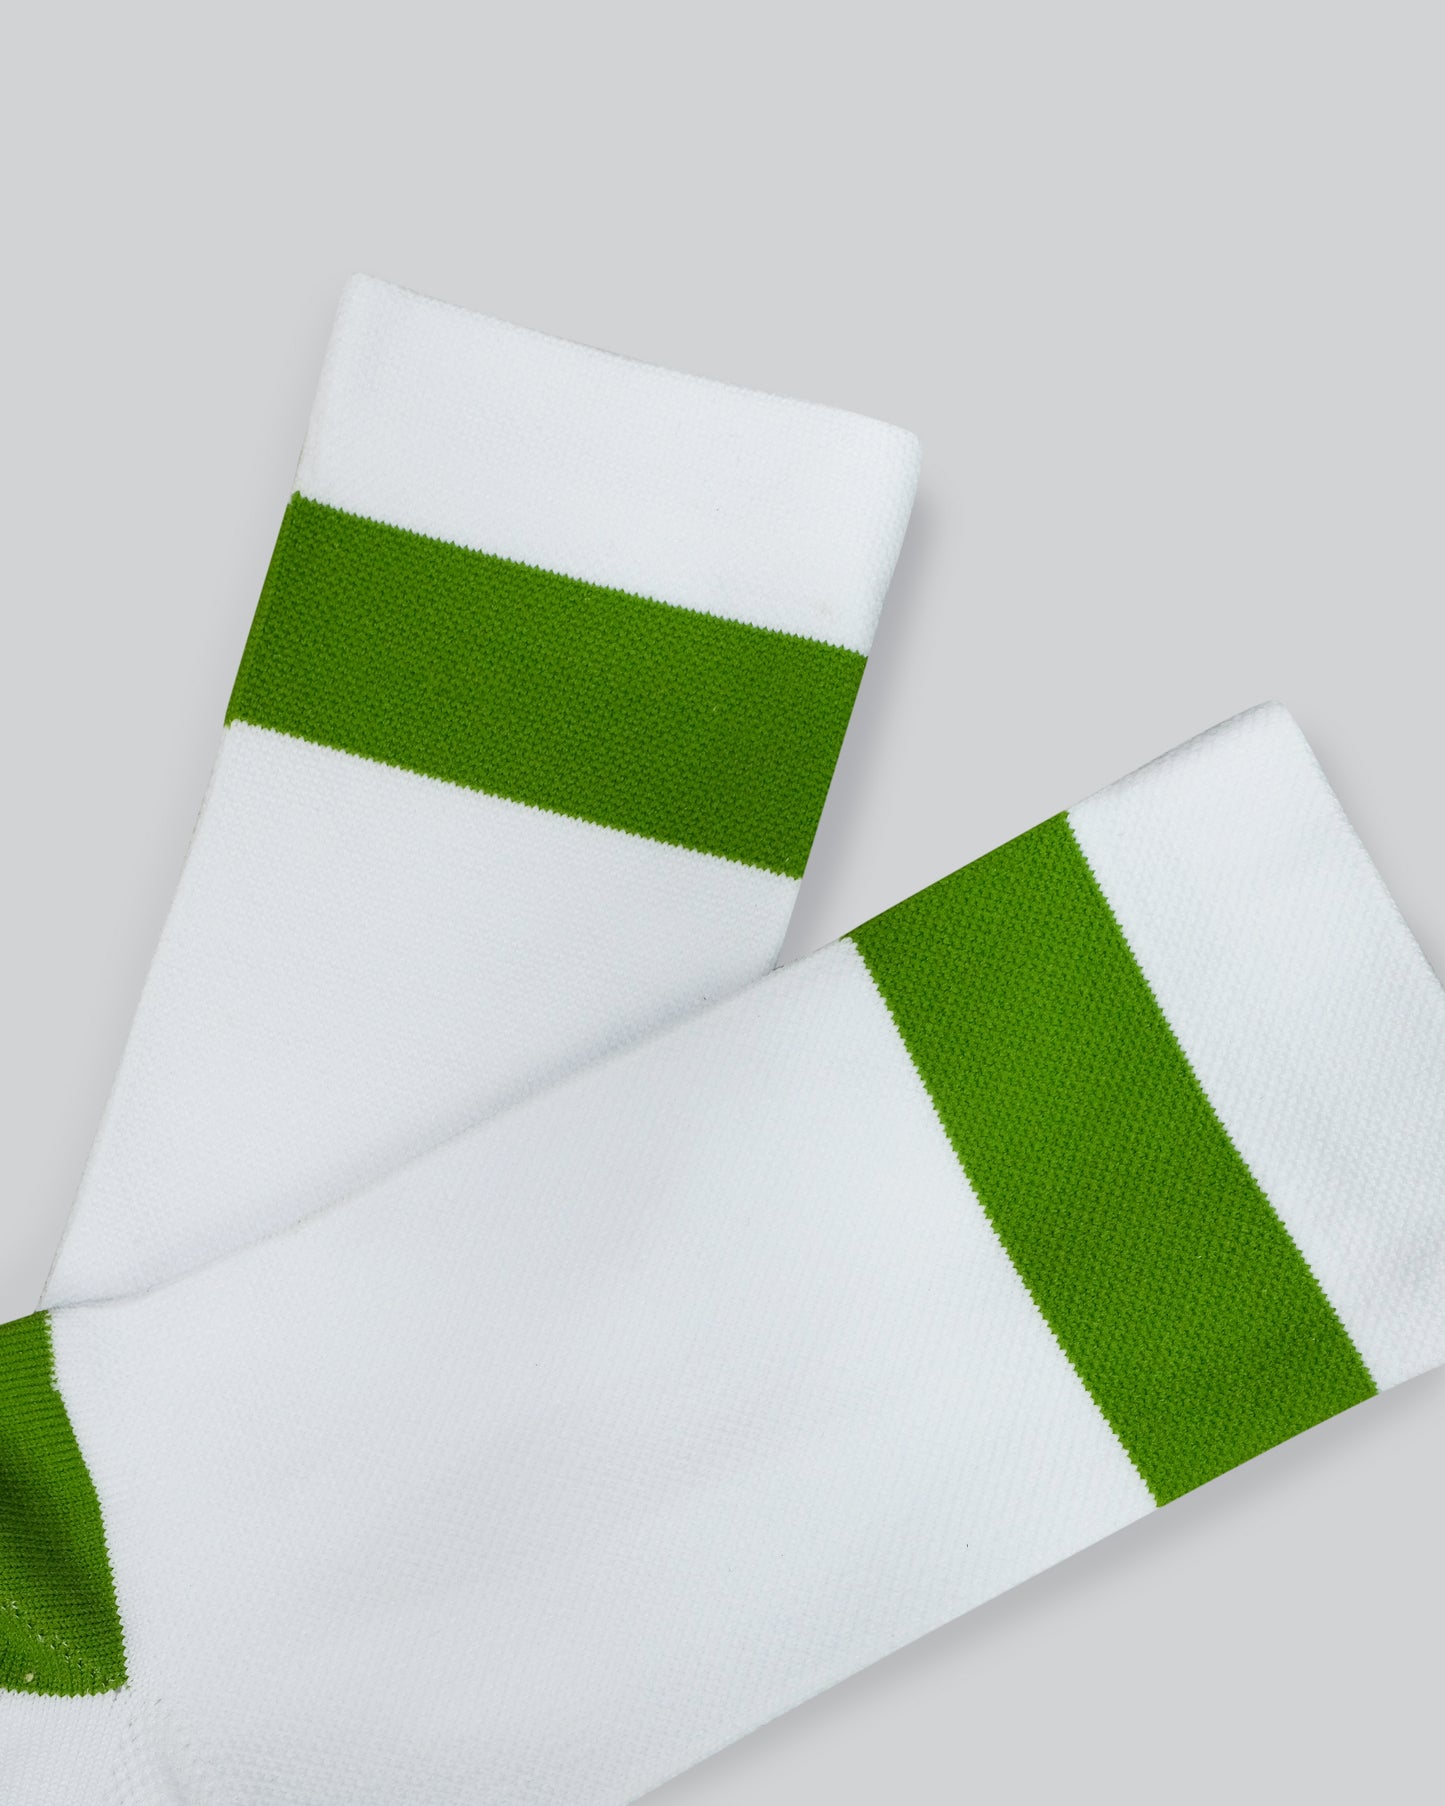 
                  
                    Stripe Team Sock - White / Green
                  
                